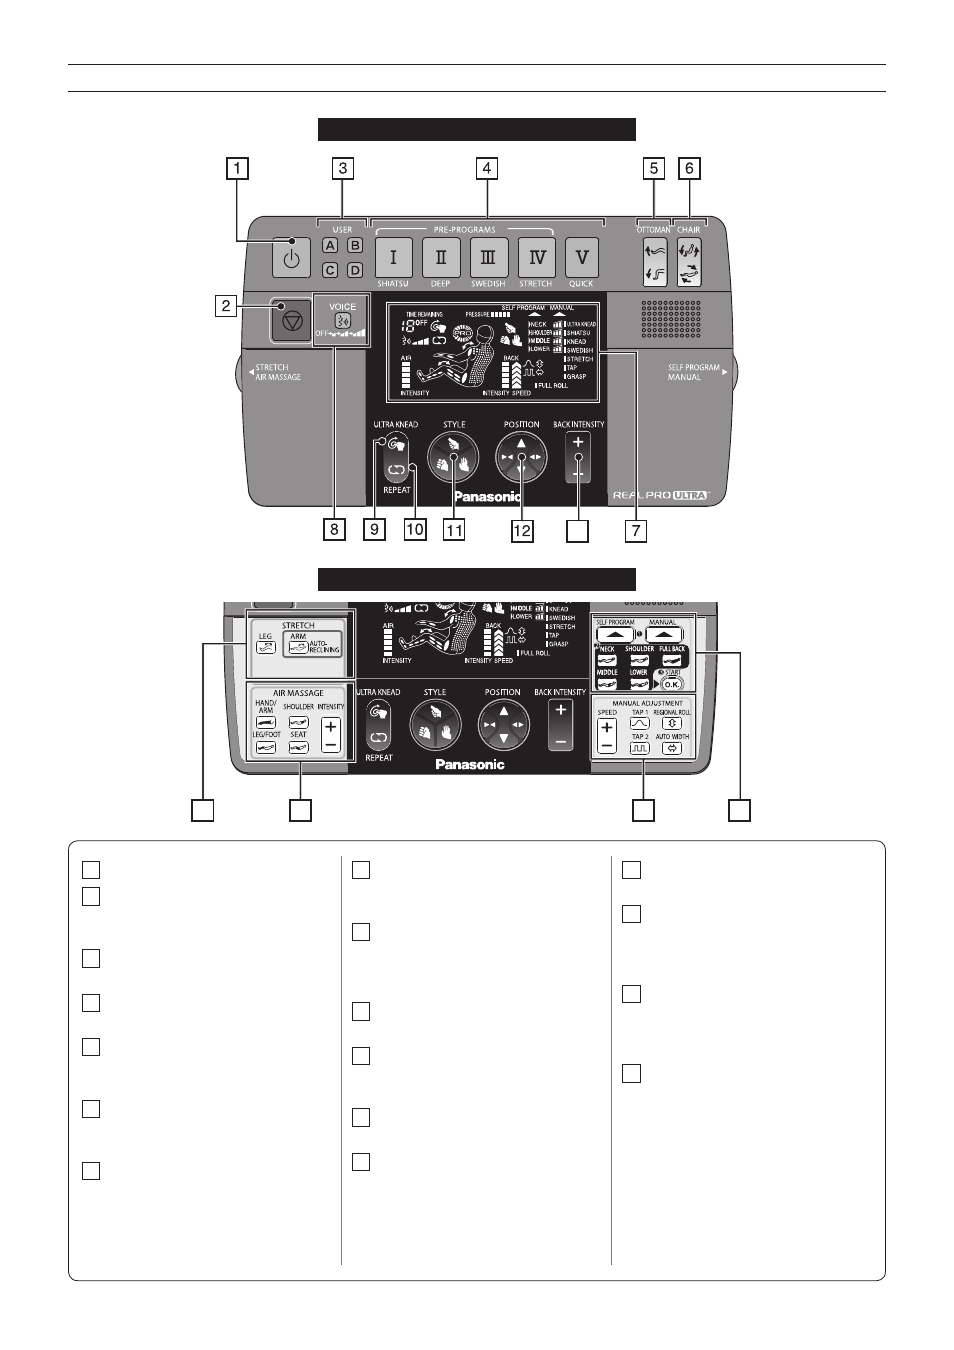 Panel de control, Panel cerrado, Panel abierto | Panasonic EP30007 Manual del usuario | Página 10 / 54